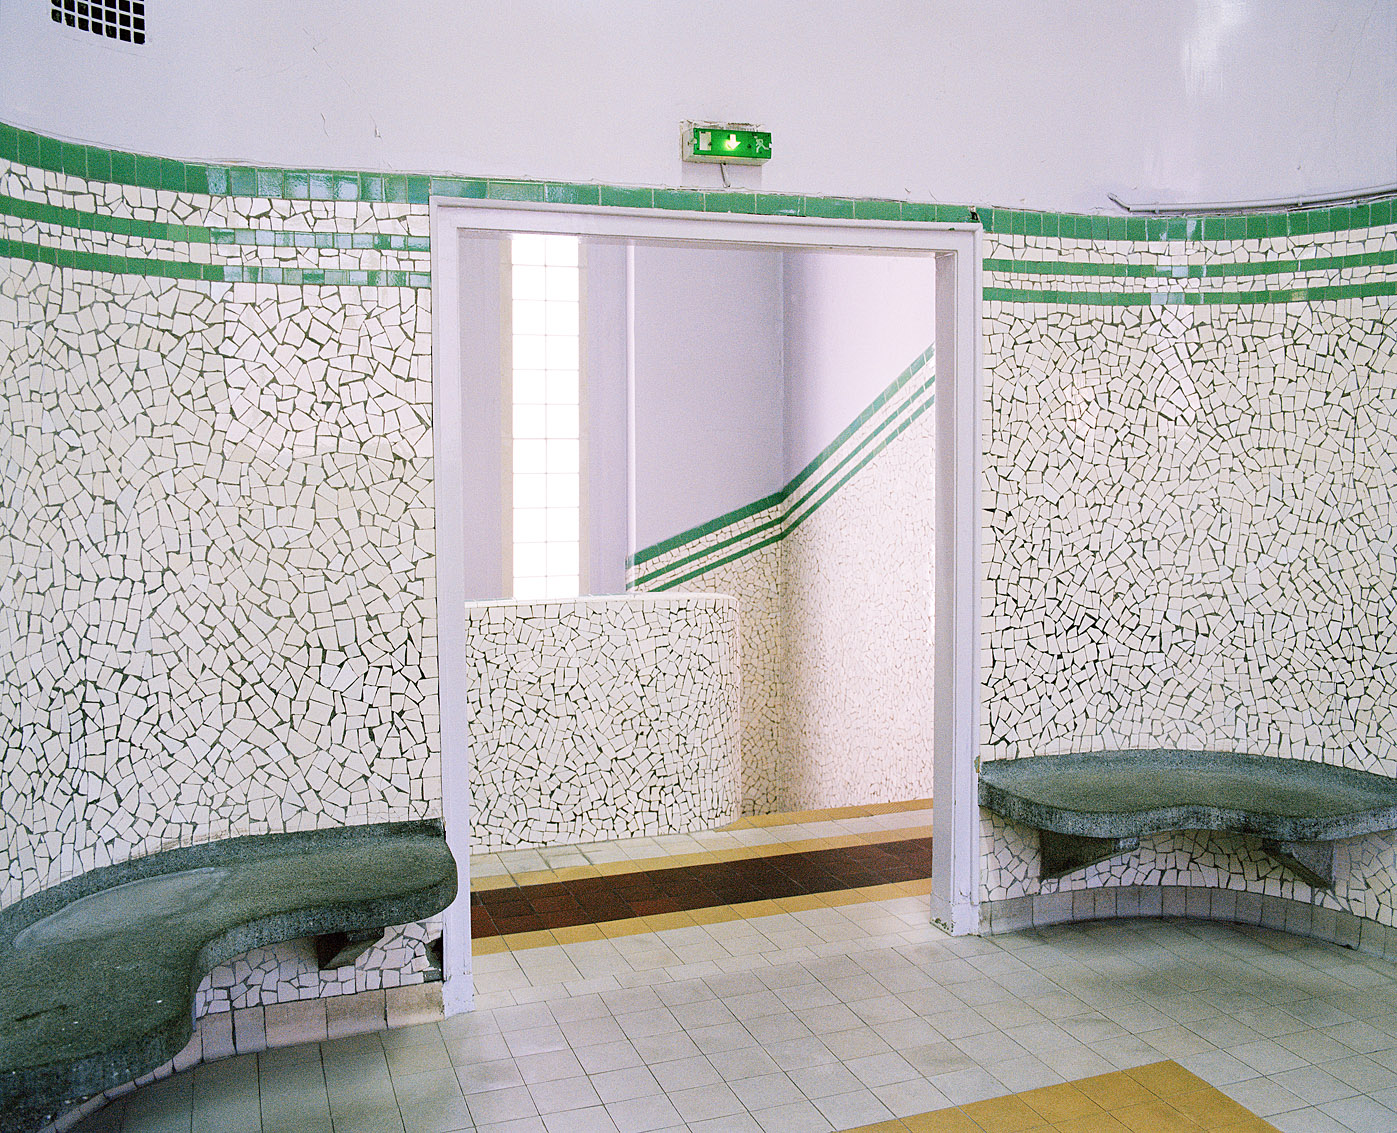 Salle d'attente des bains municipaux Bidassoa, Paris.